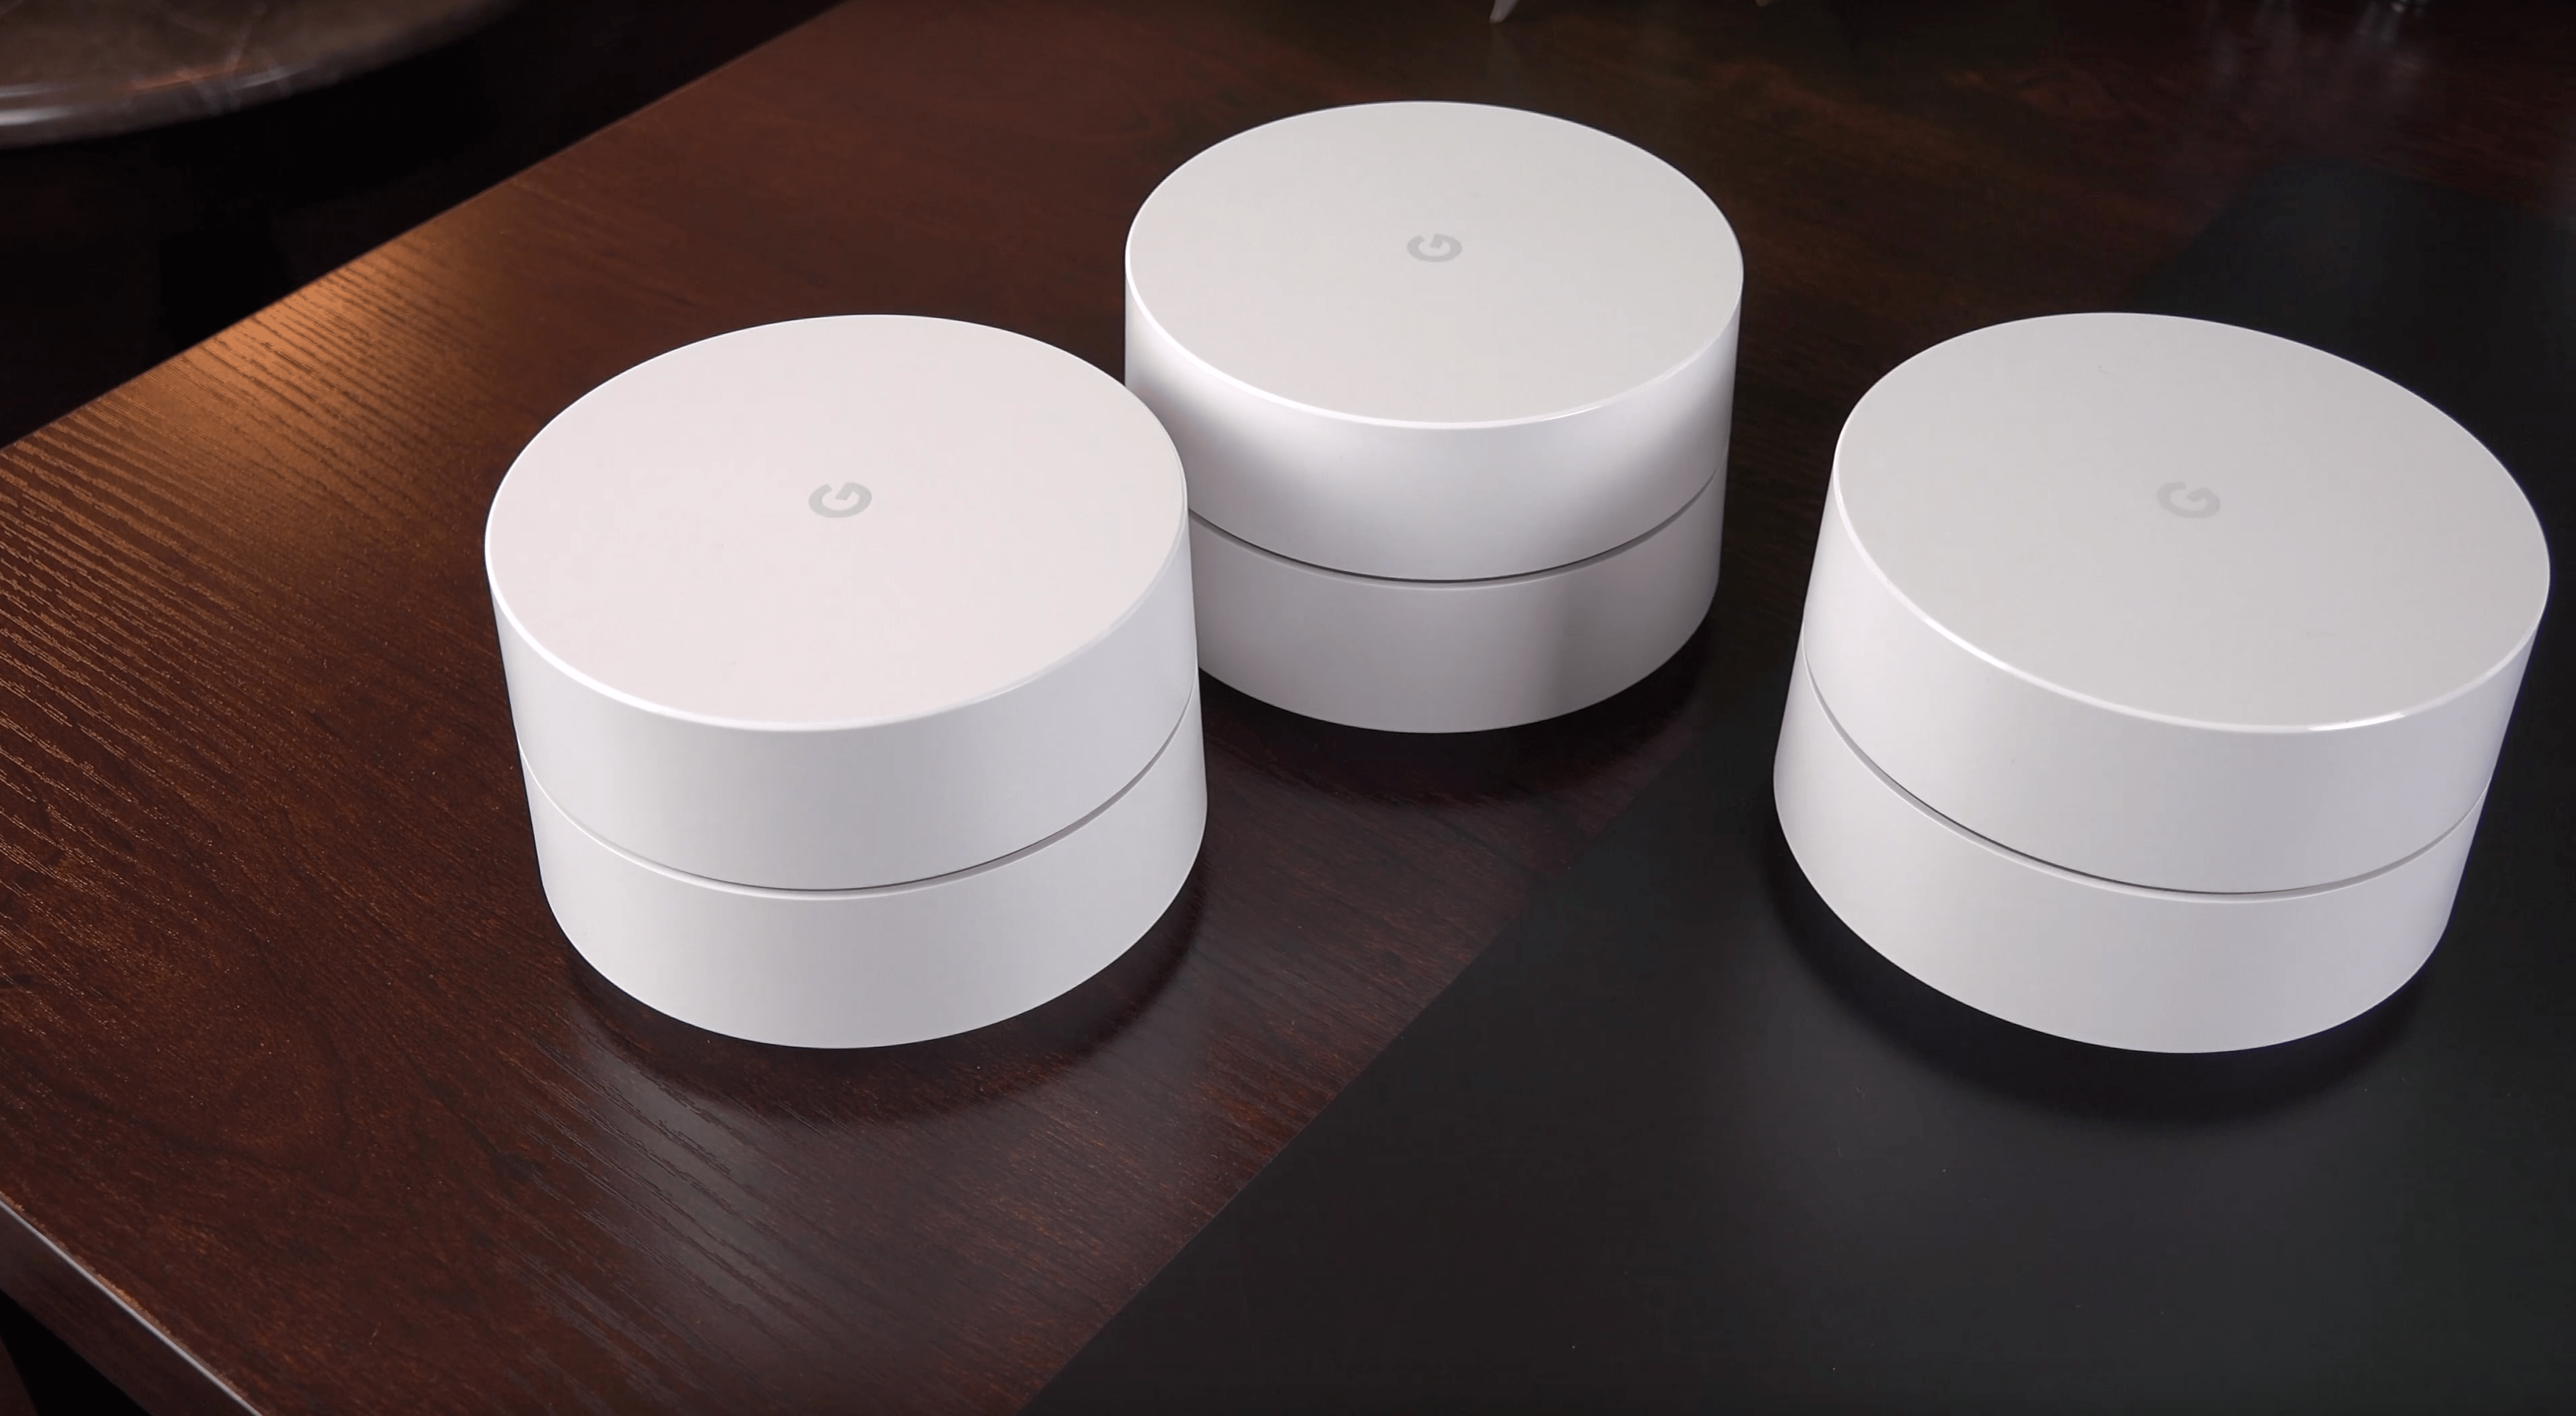 Roteador Google Wi-Fi soluciona quedas de sinal e conecta a casa toda